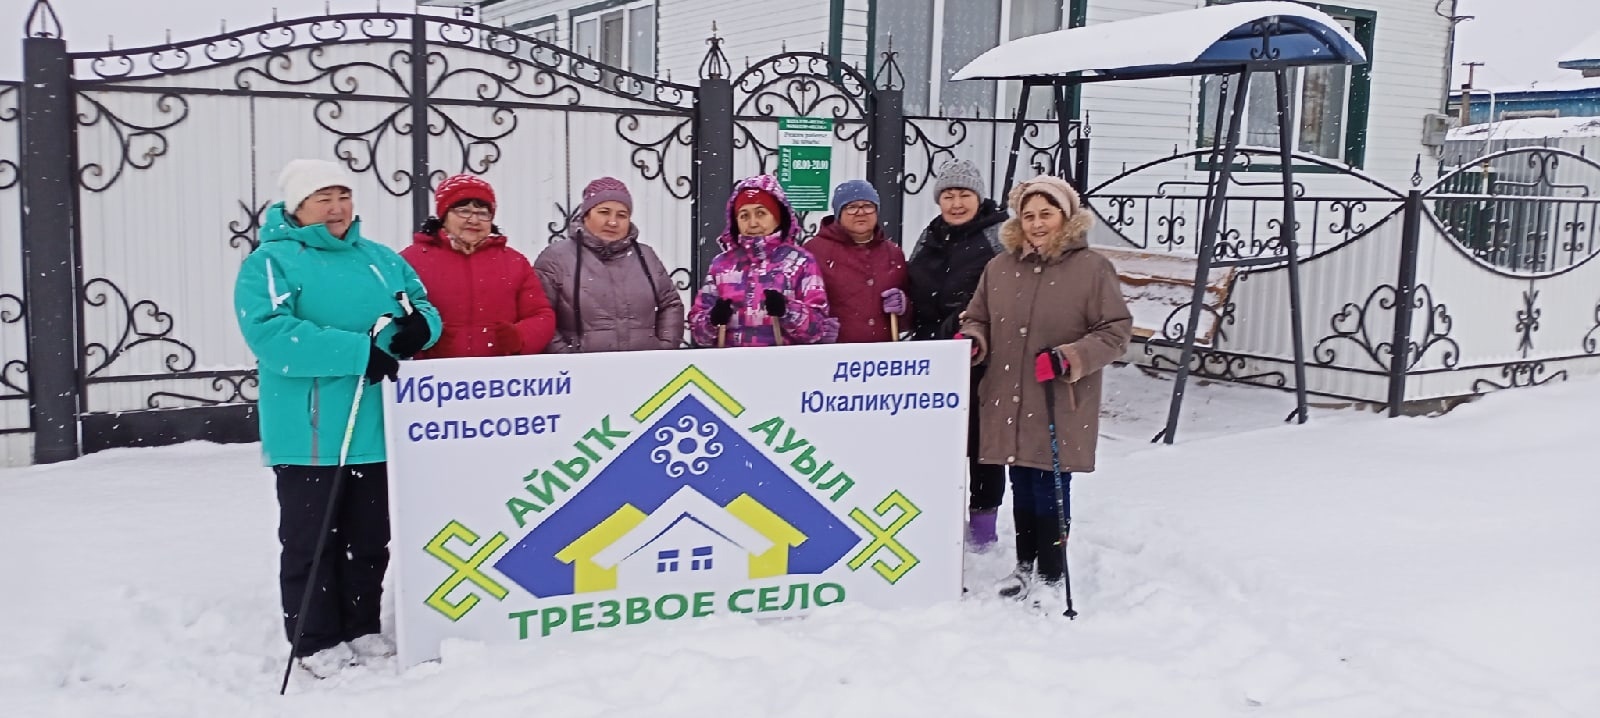 11 населенных пунктов Кигинского района Башкирии принимают участие в конкурсе «Трезвое село»